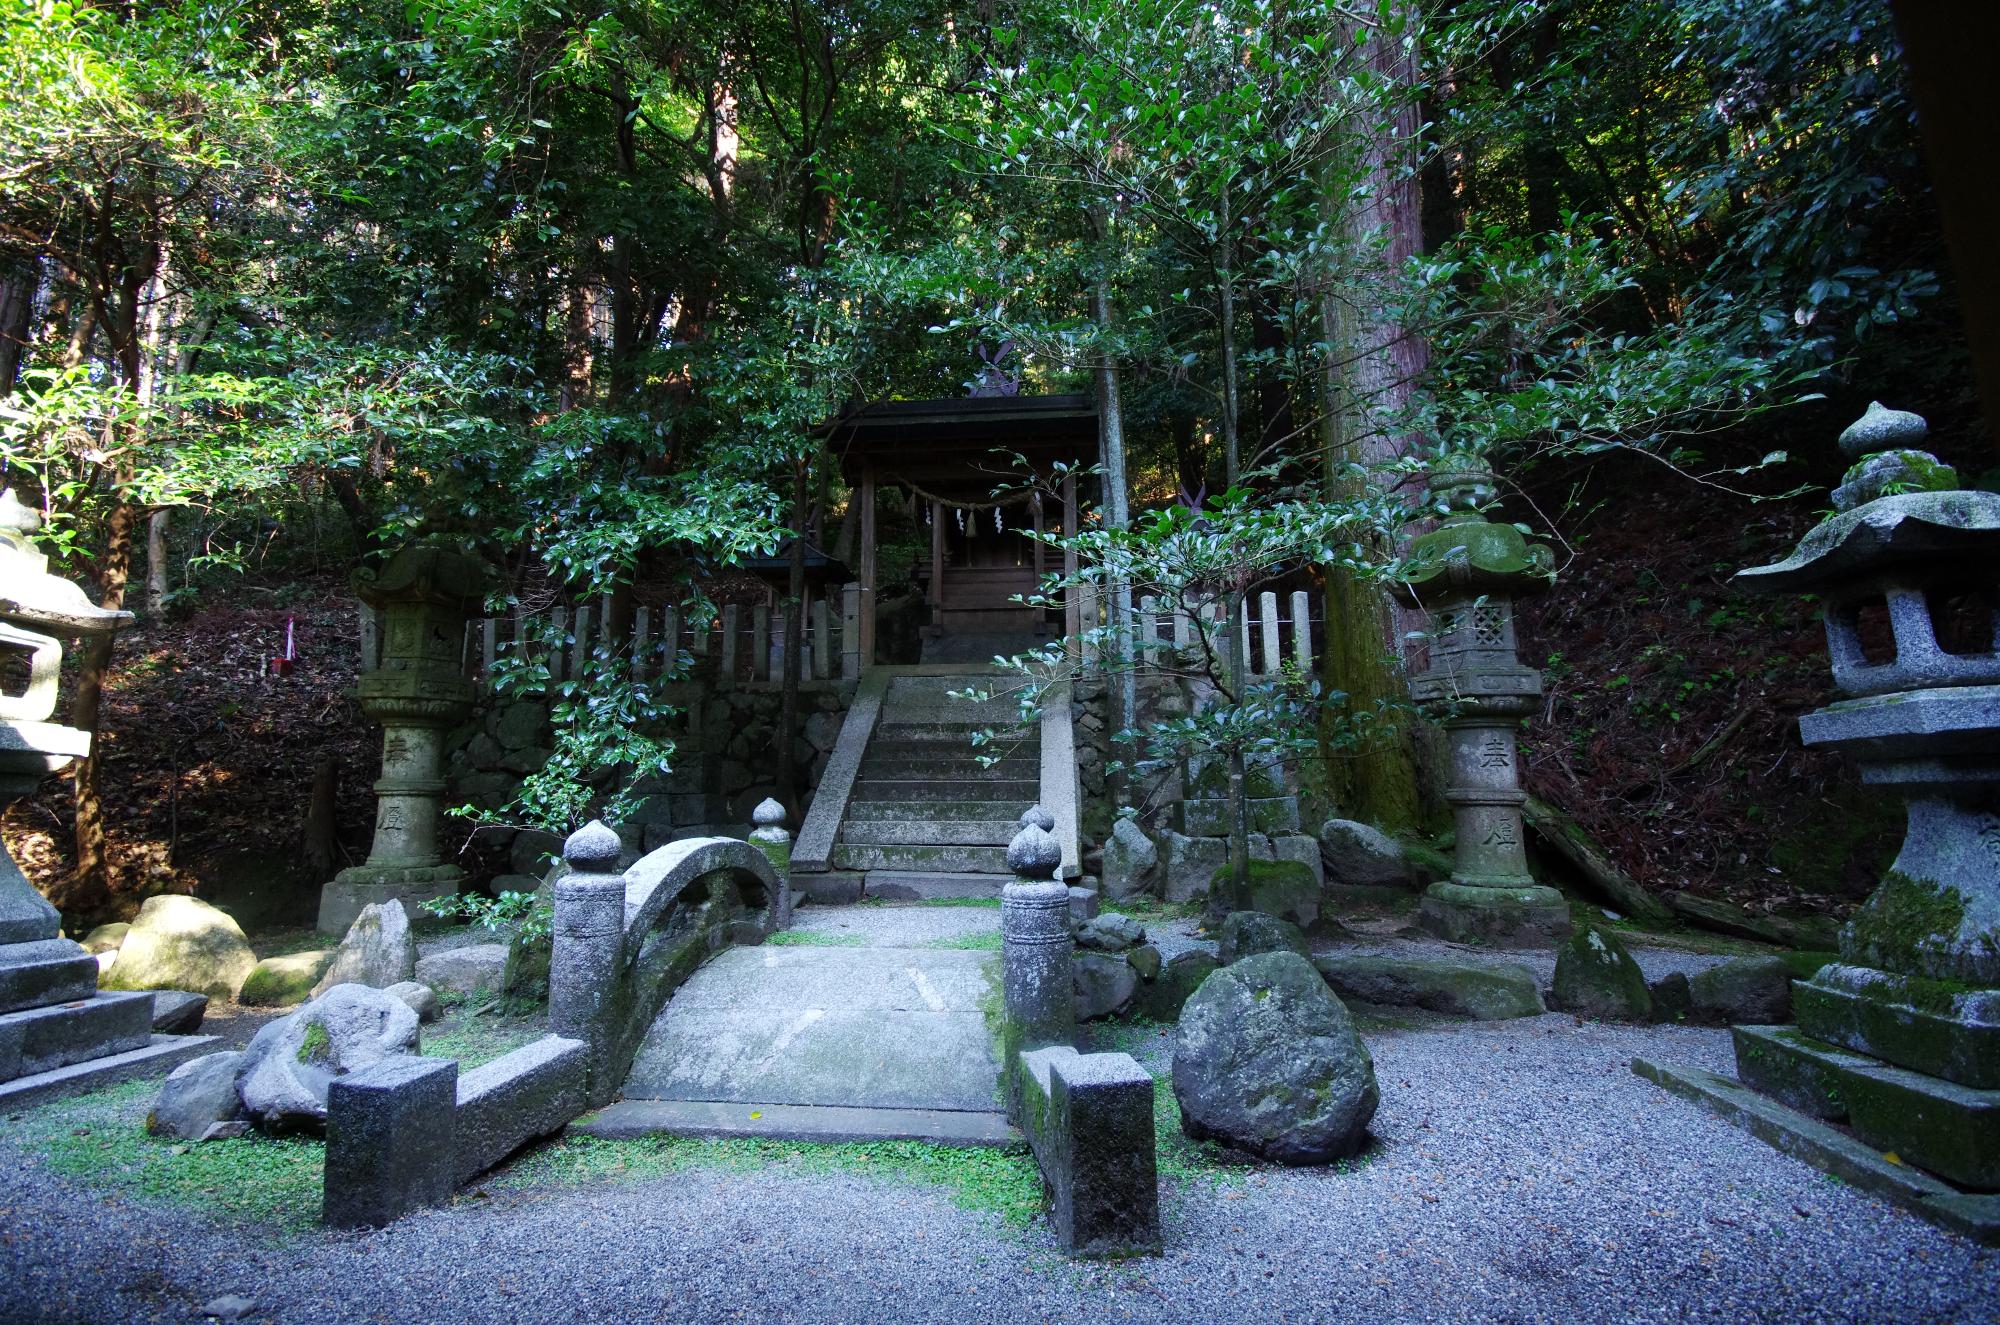 石の灯籠が4つ並ぶ石の道と、鳥居が並ぶ石の階段が林の中に続いている写真